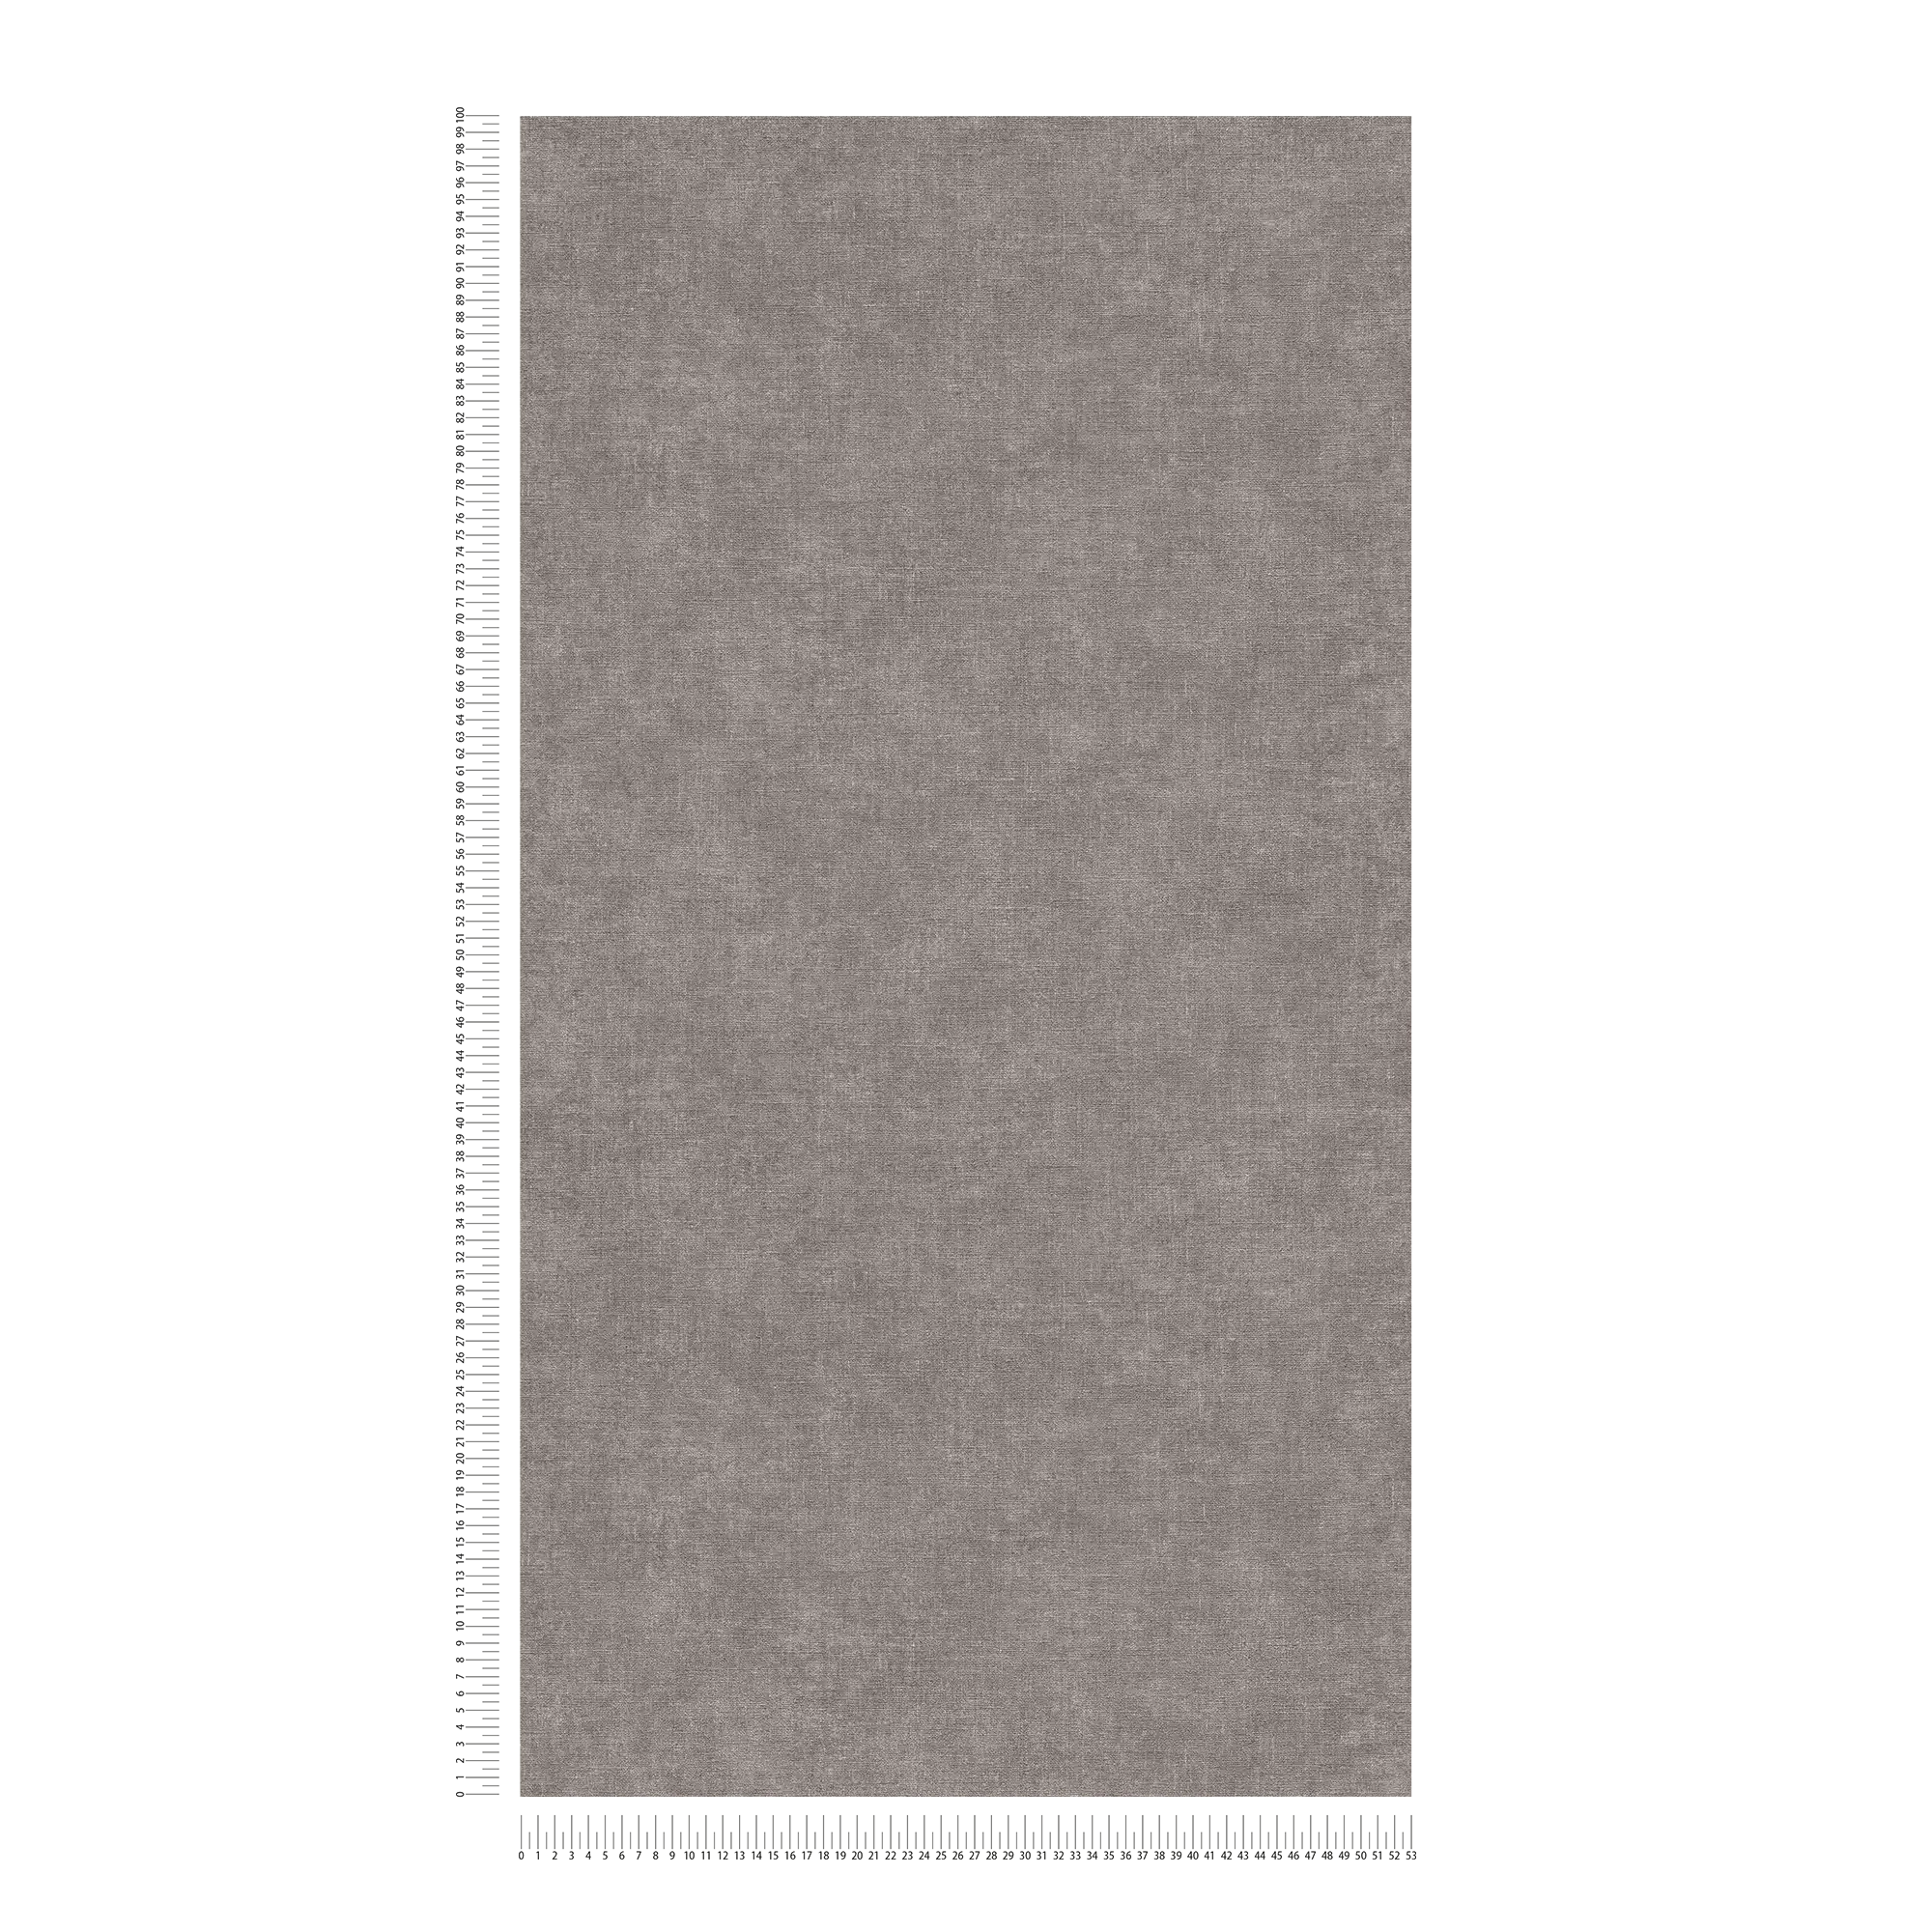             Eenheidsbehang in pleisterlook met lichte textuur - grijs
        